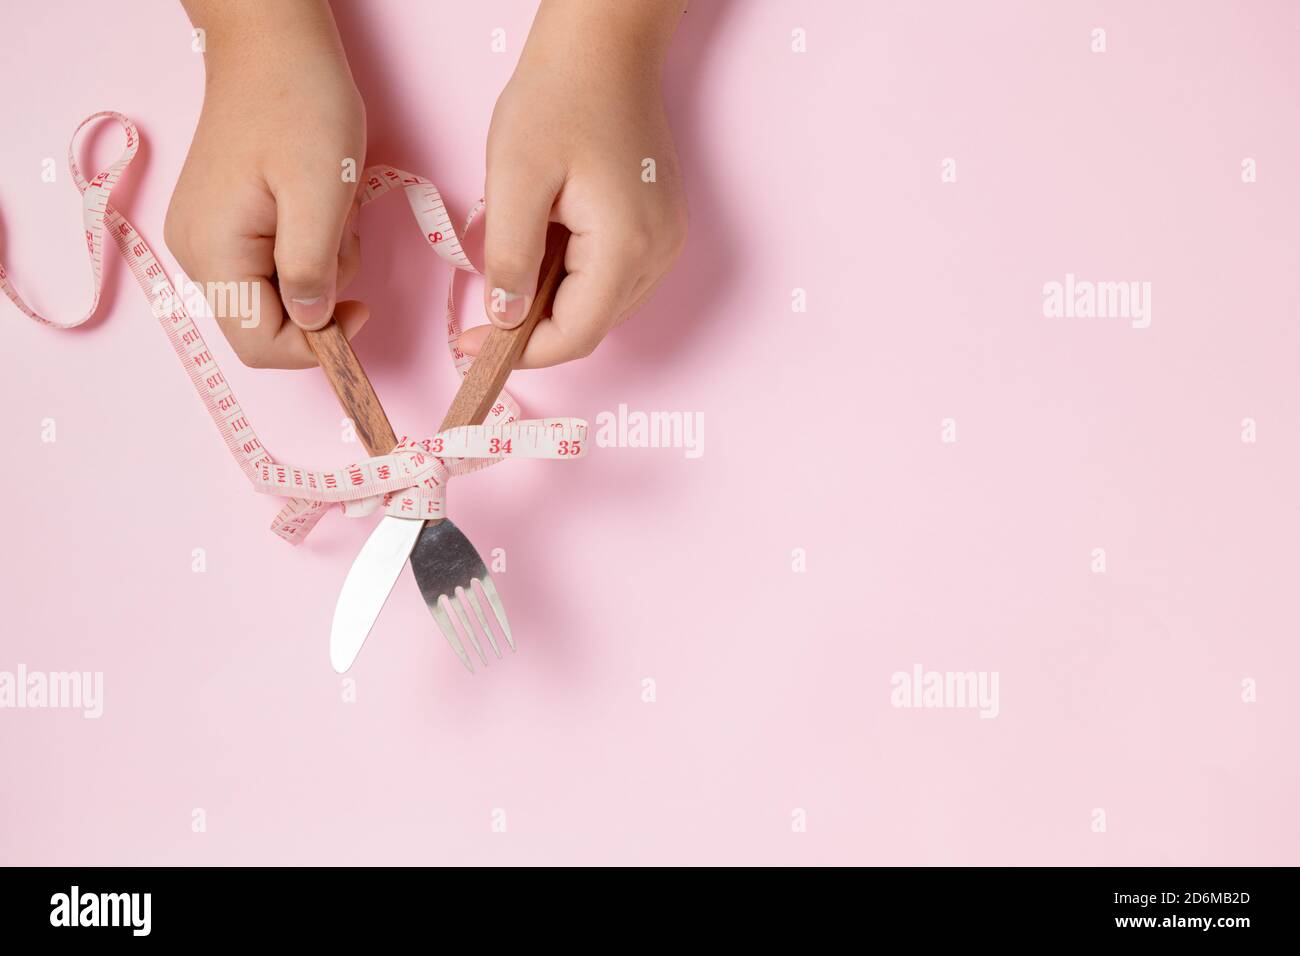 Gordo niño mano sosteniendo cuchillo y tenedor envuelto en cinta métrica sobre fondo rosa. Concepto de dieta Foto de stock